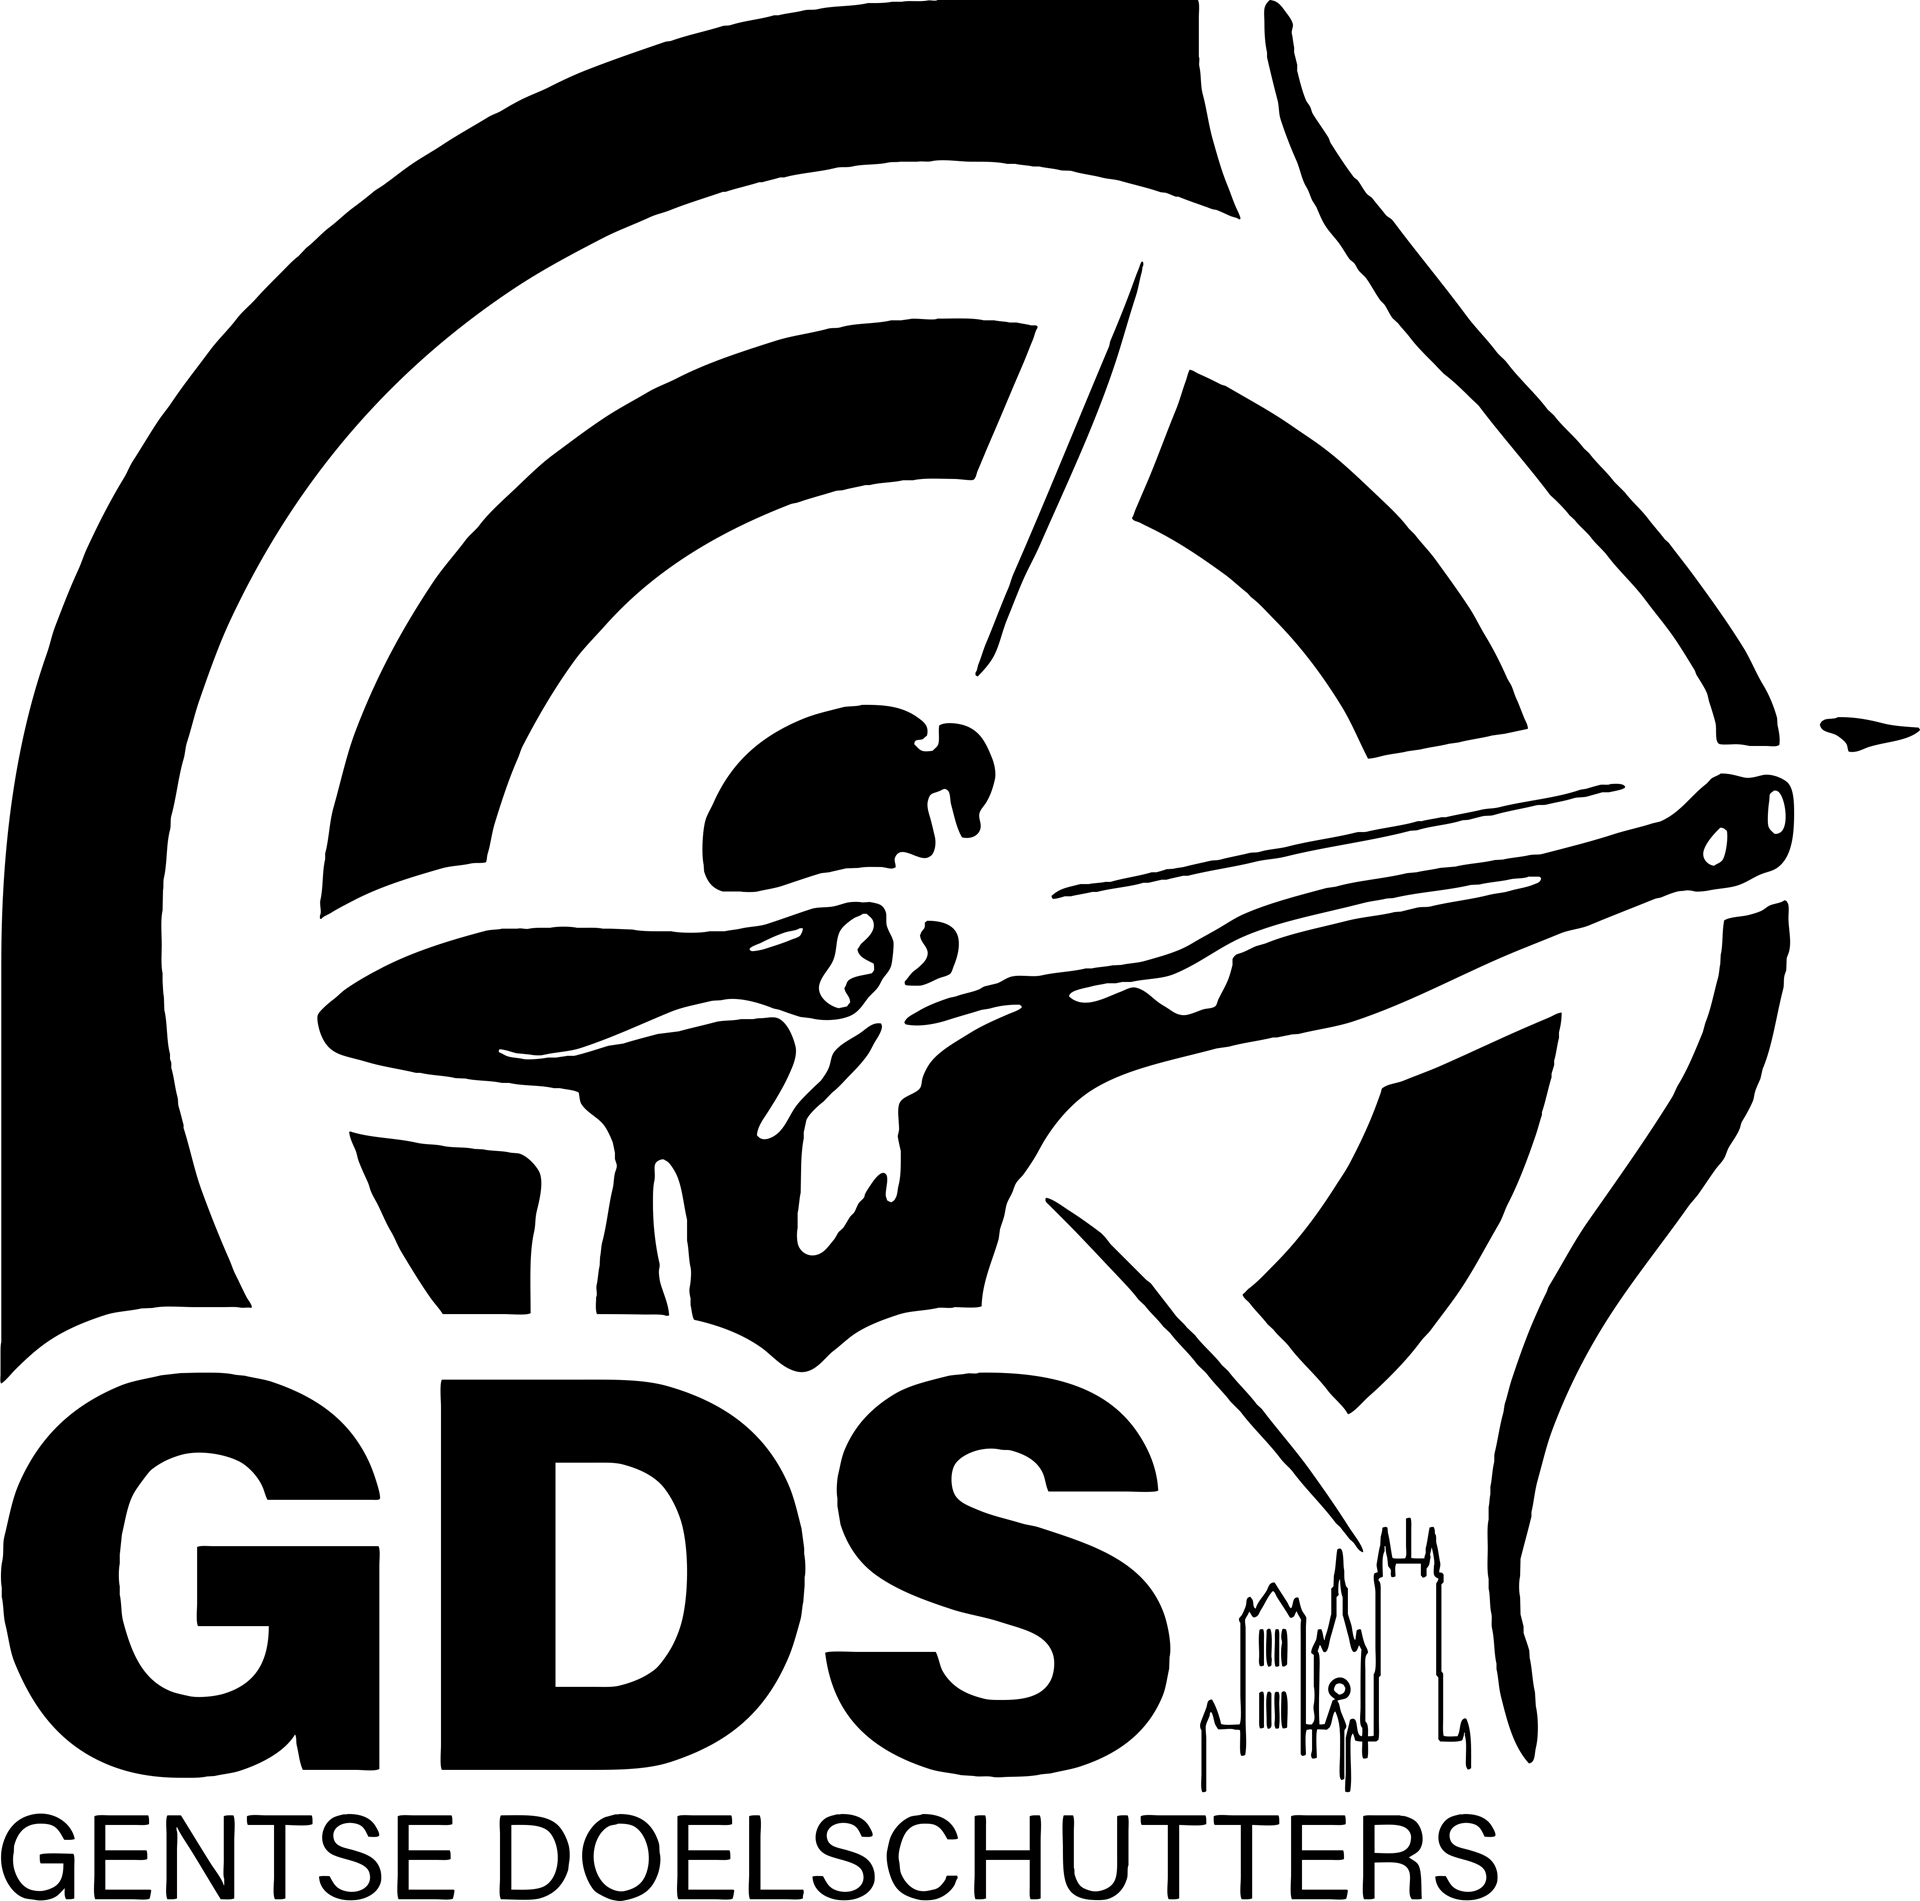 GDS_Logo